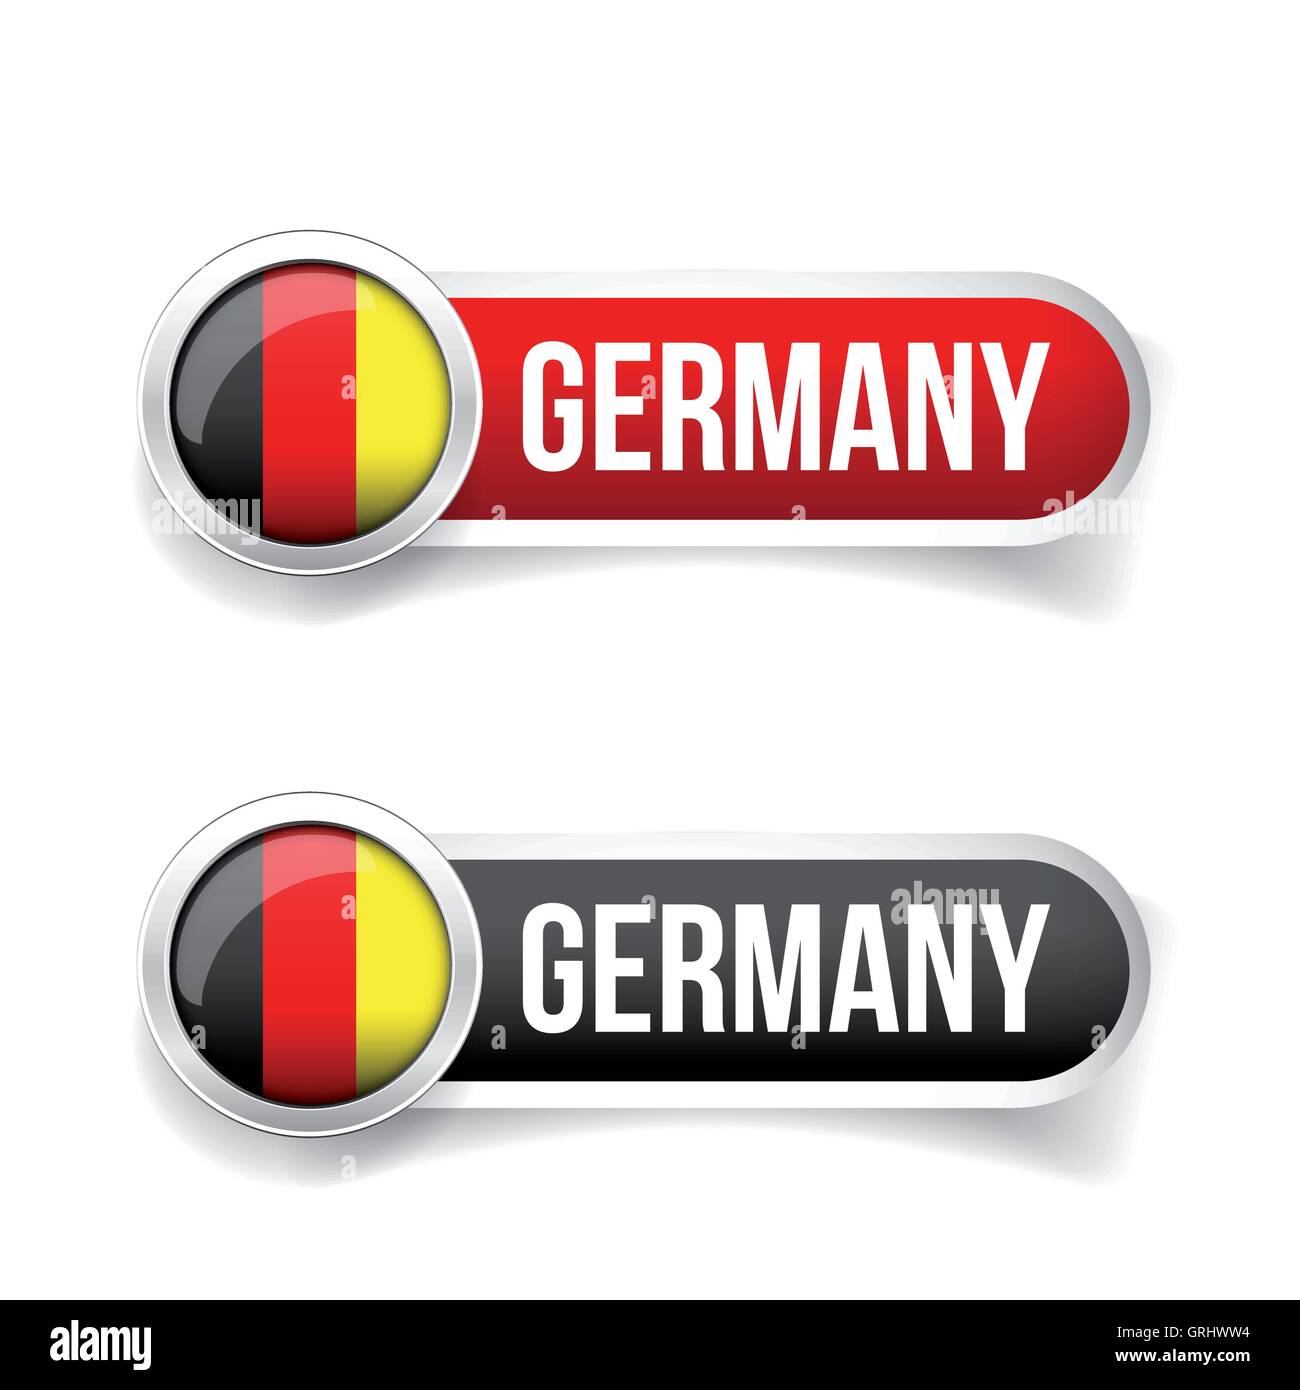 2x Sticker Round Roundel Flag Germany German